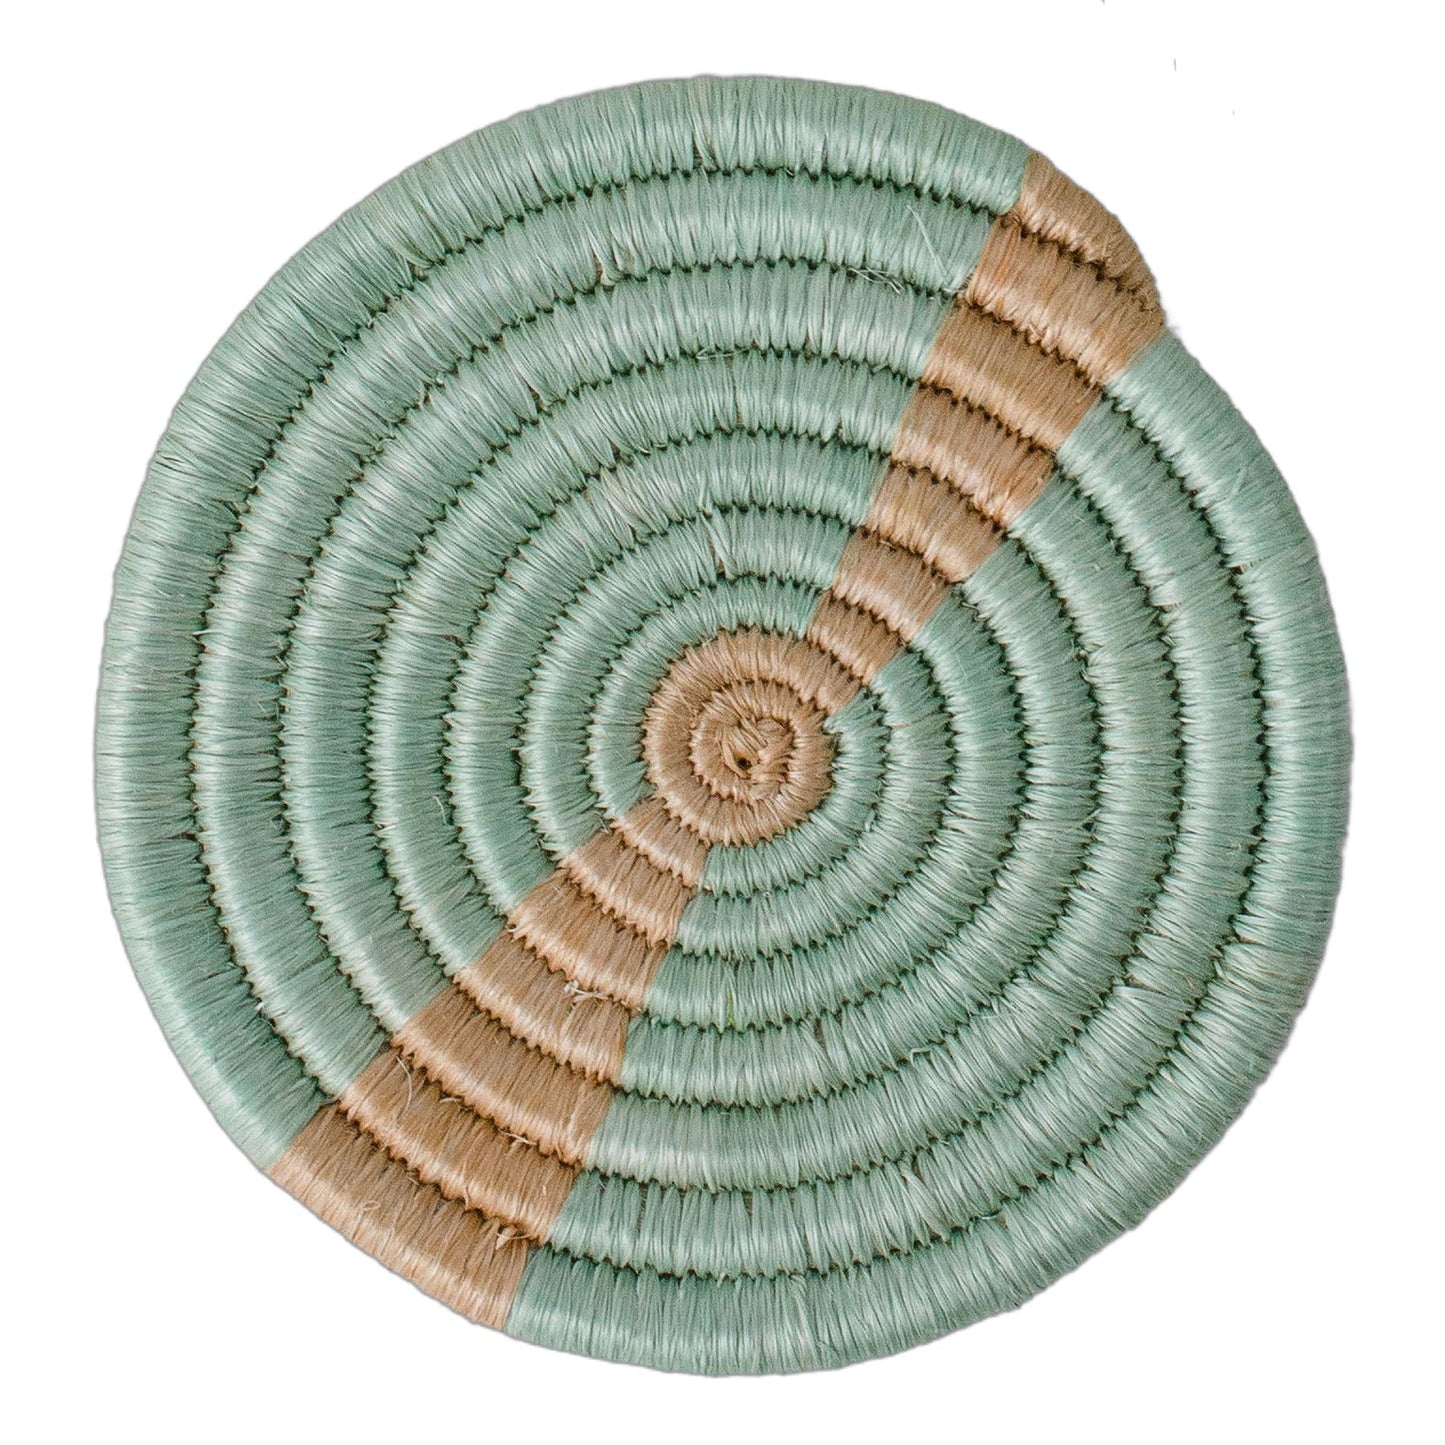 Restorative Coasters - Multicolor Seafoam, Set of 4 | Home Decor